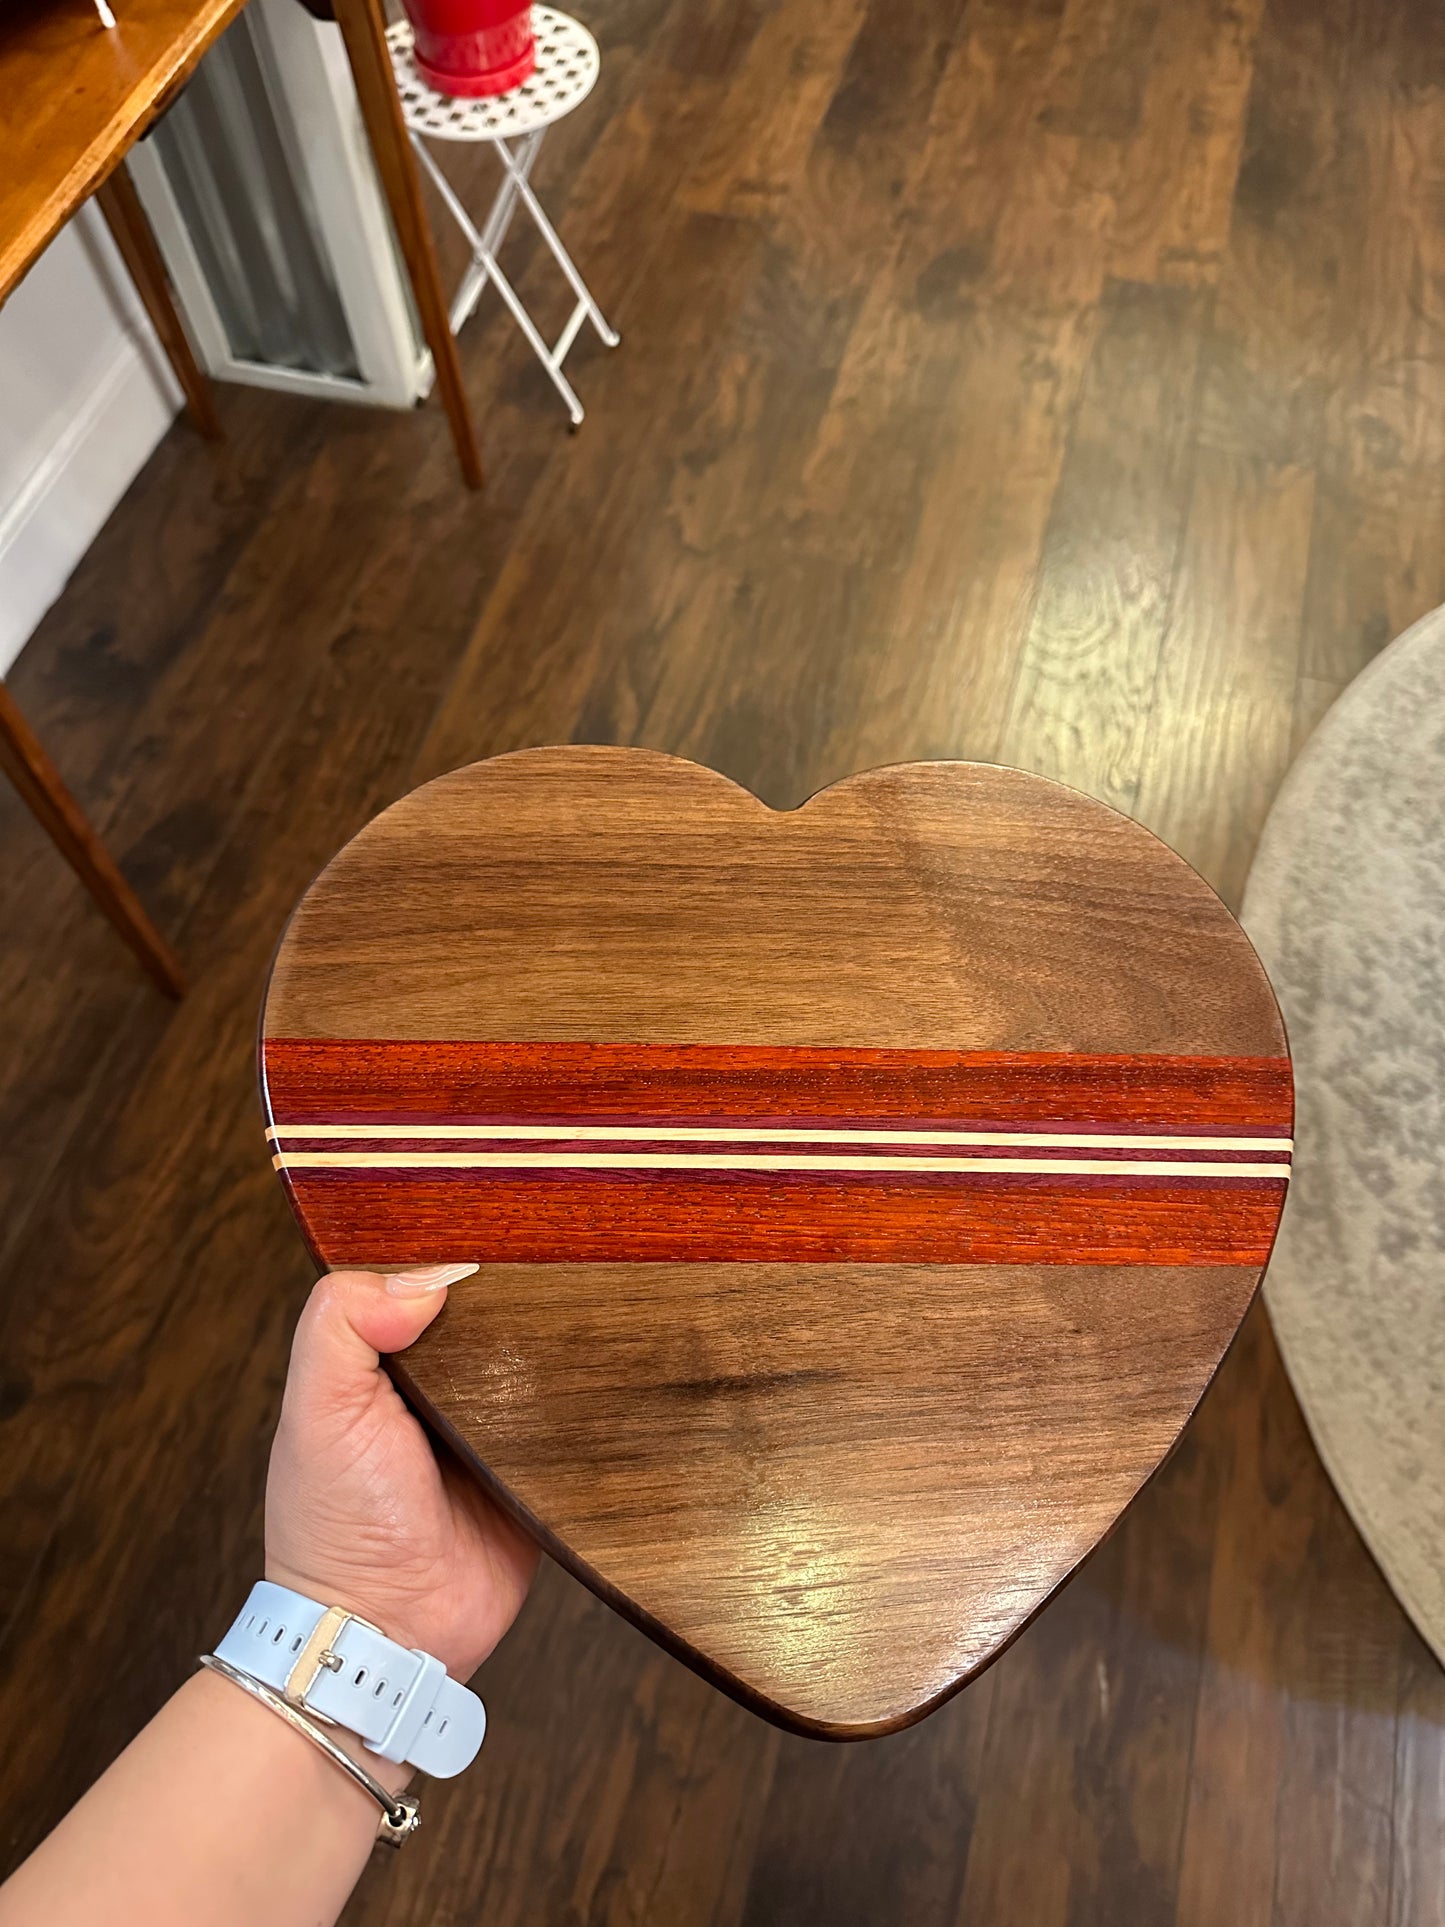 Heart shape charcuterie boards